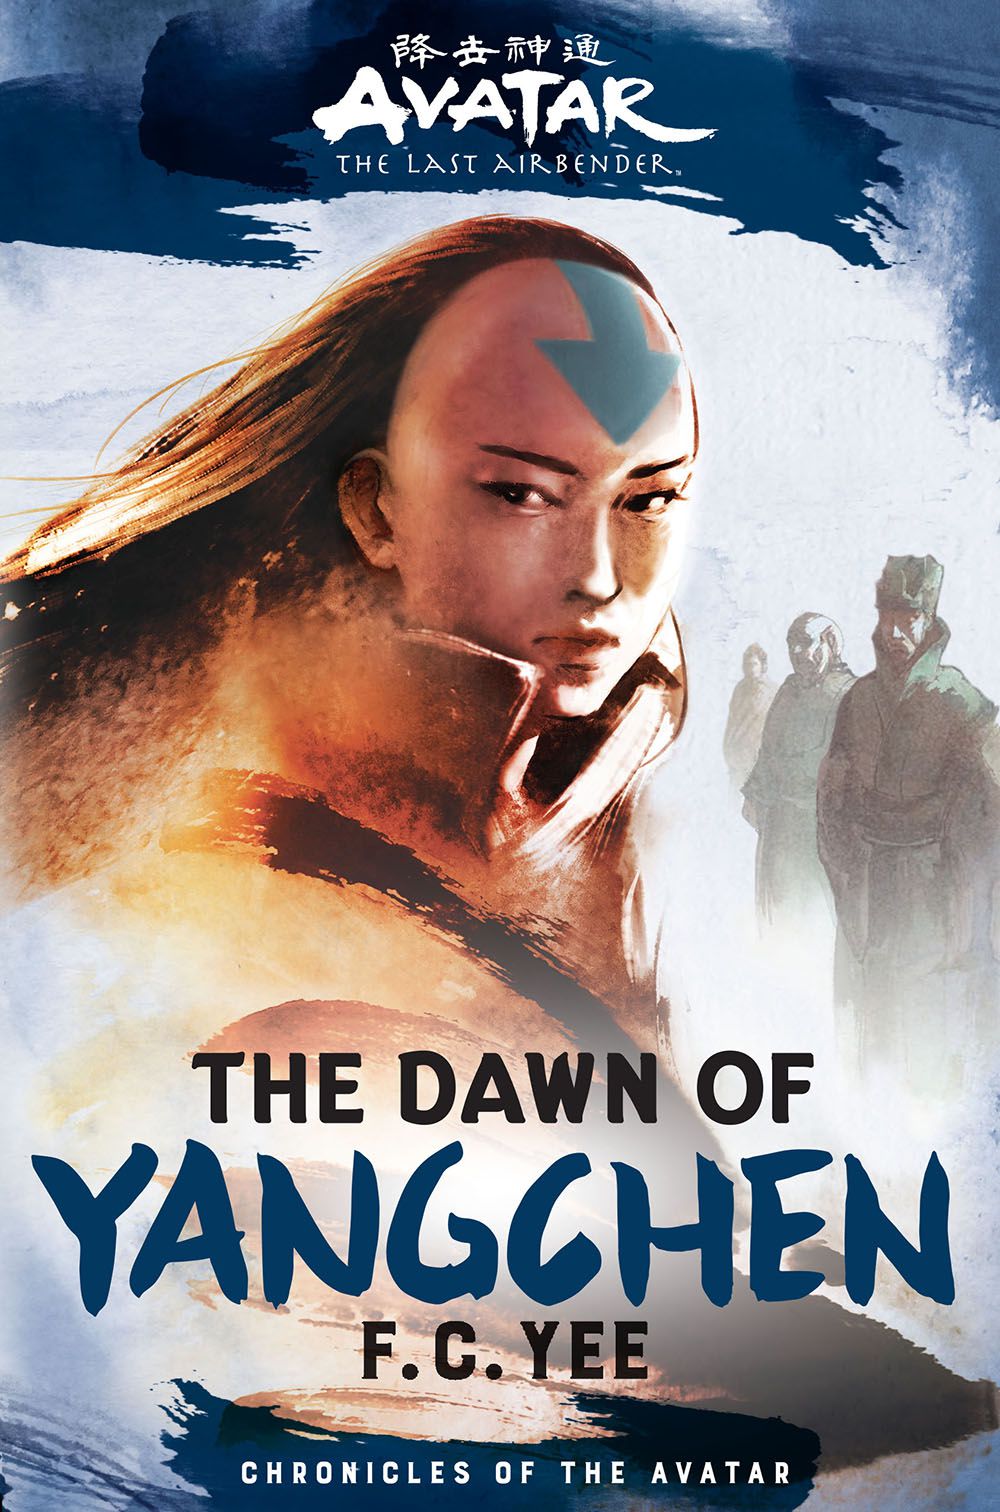 La copertina del libro di Avatar, The Last Airbender: The Dawn of Yangchen, con un Avatar femminile in una veste astratta, con una fila di Avatar del passato dietro di lei, che si estende in lontananza